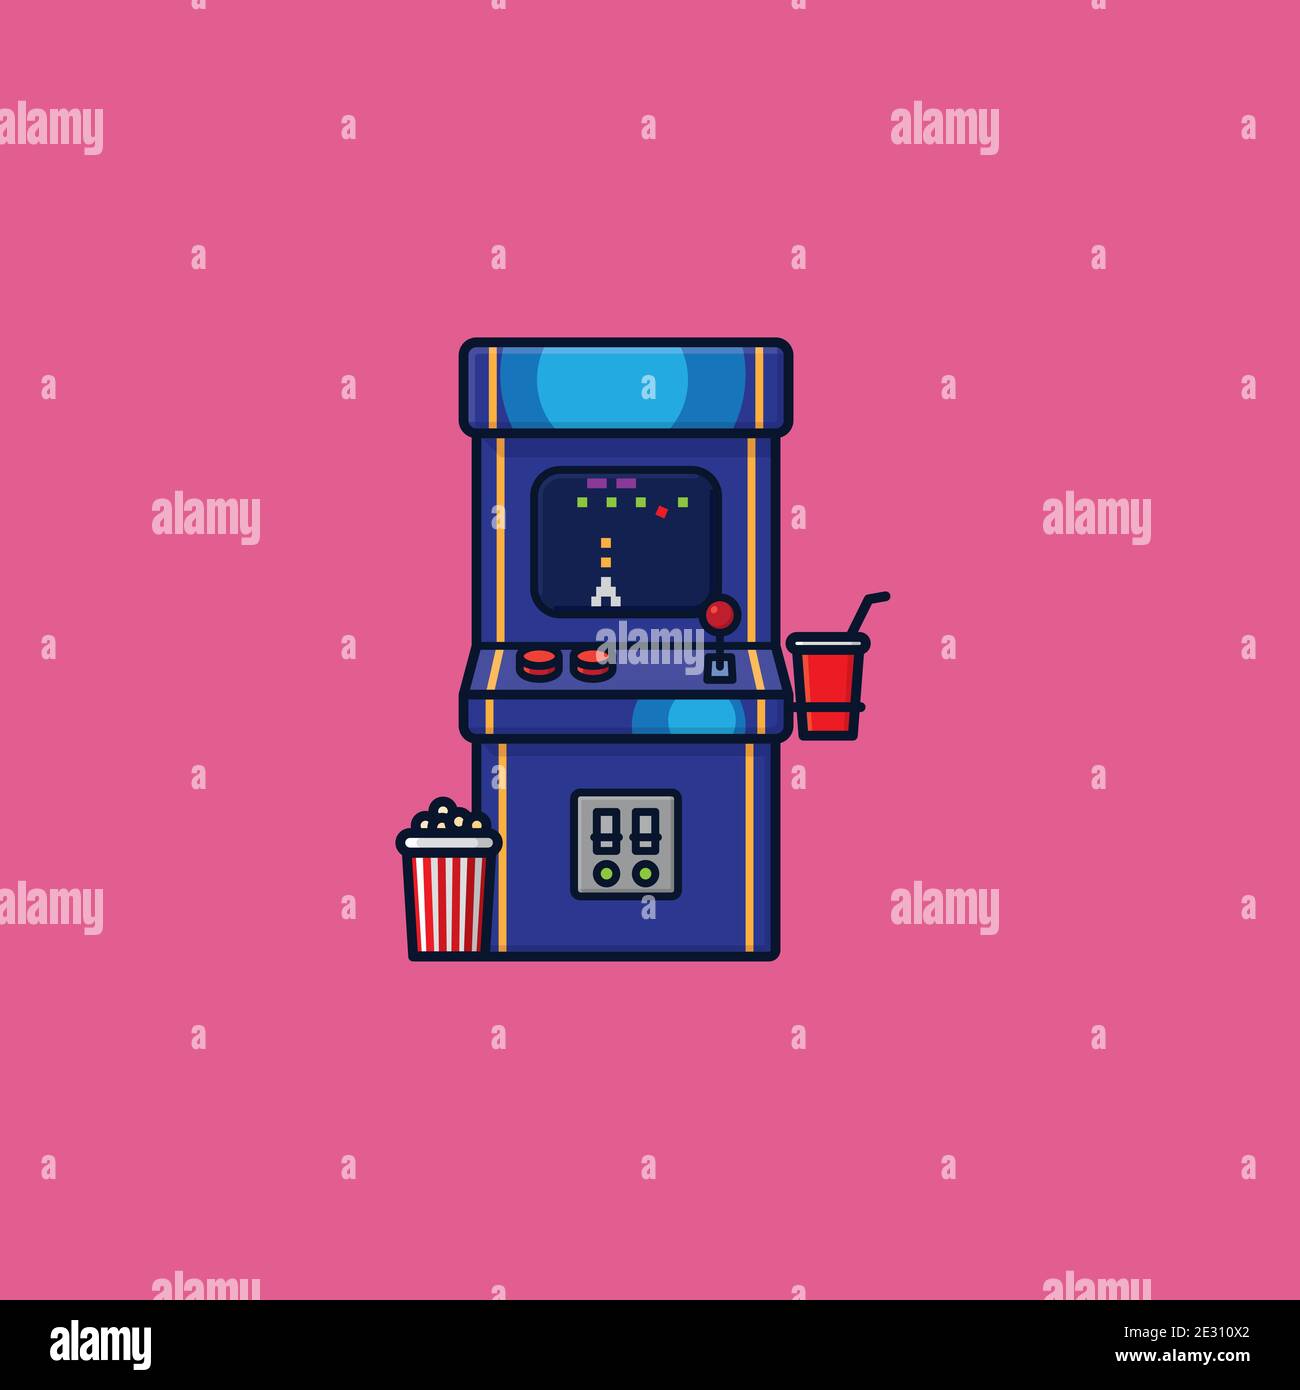 Illustrazione vettoriale di un videogioco arcade per la Giornata dei videogiochi del 12 settembre. Illustrazione Vettoriale